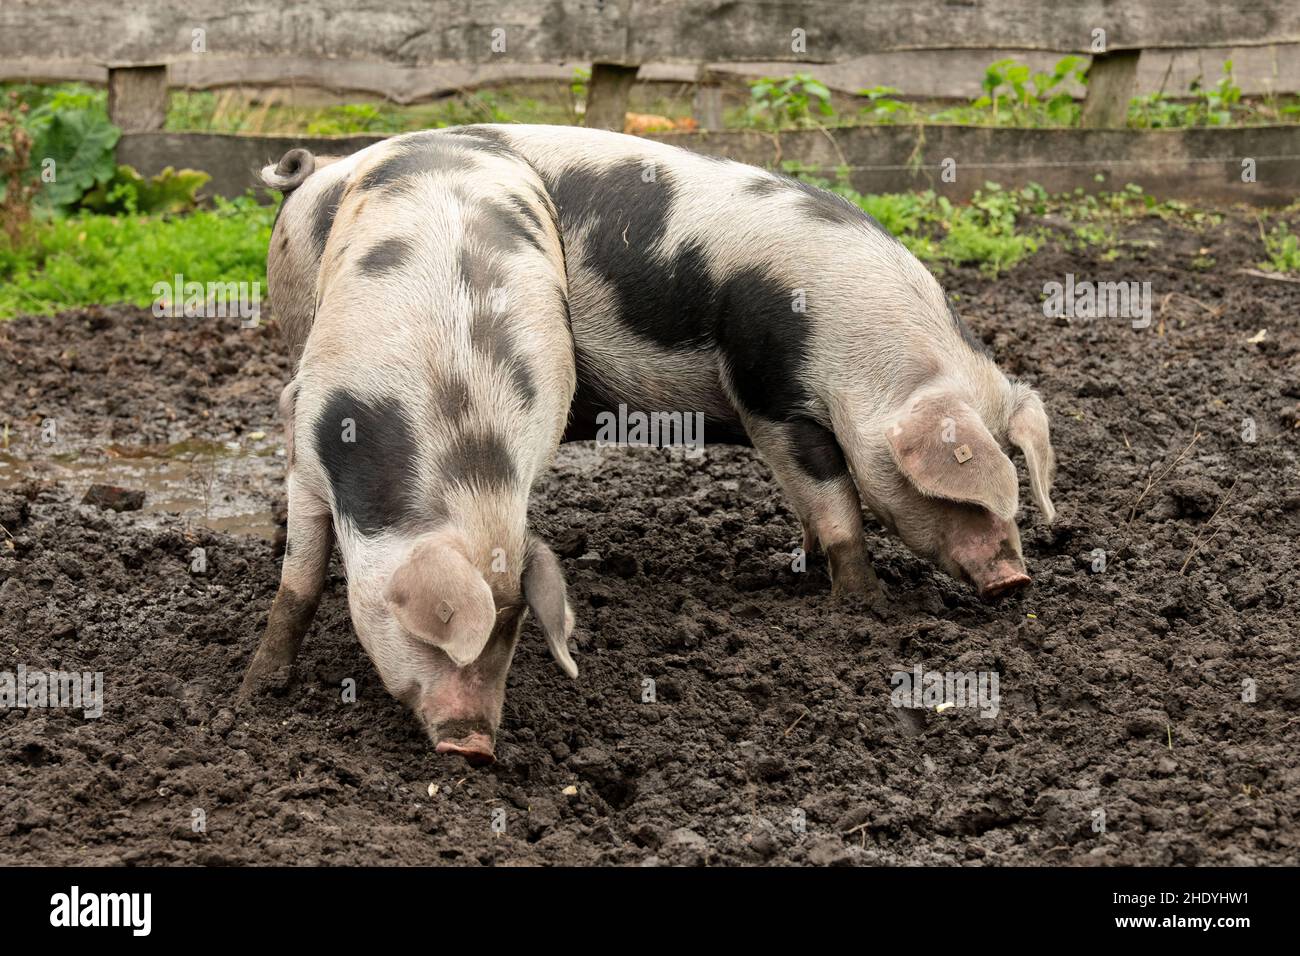 pig, Bentheim Black Pied pig, pigs Stock Photo